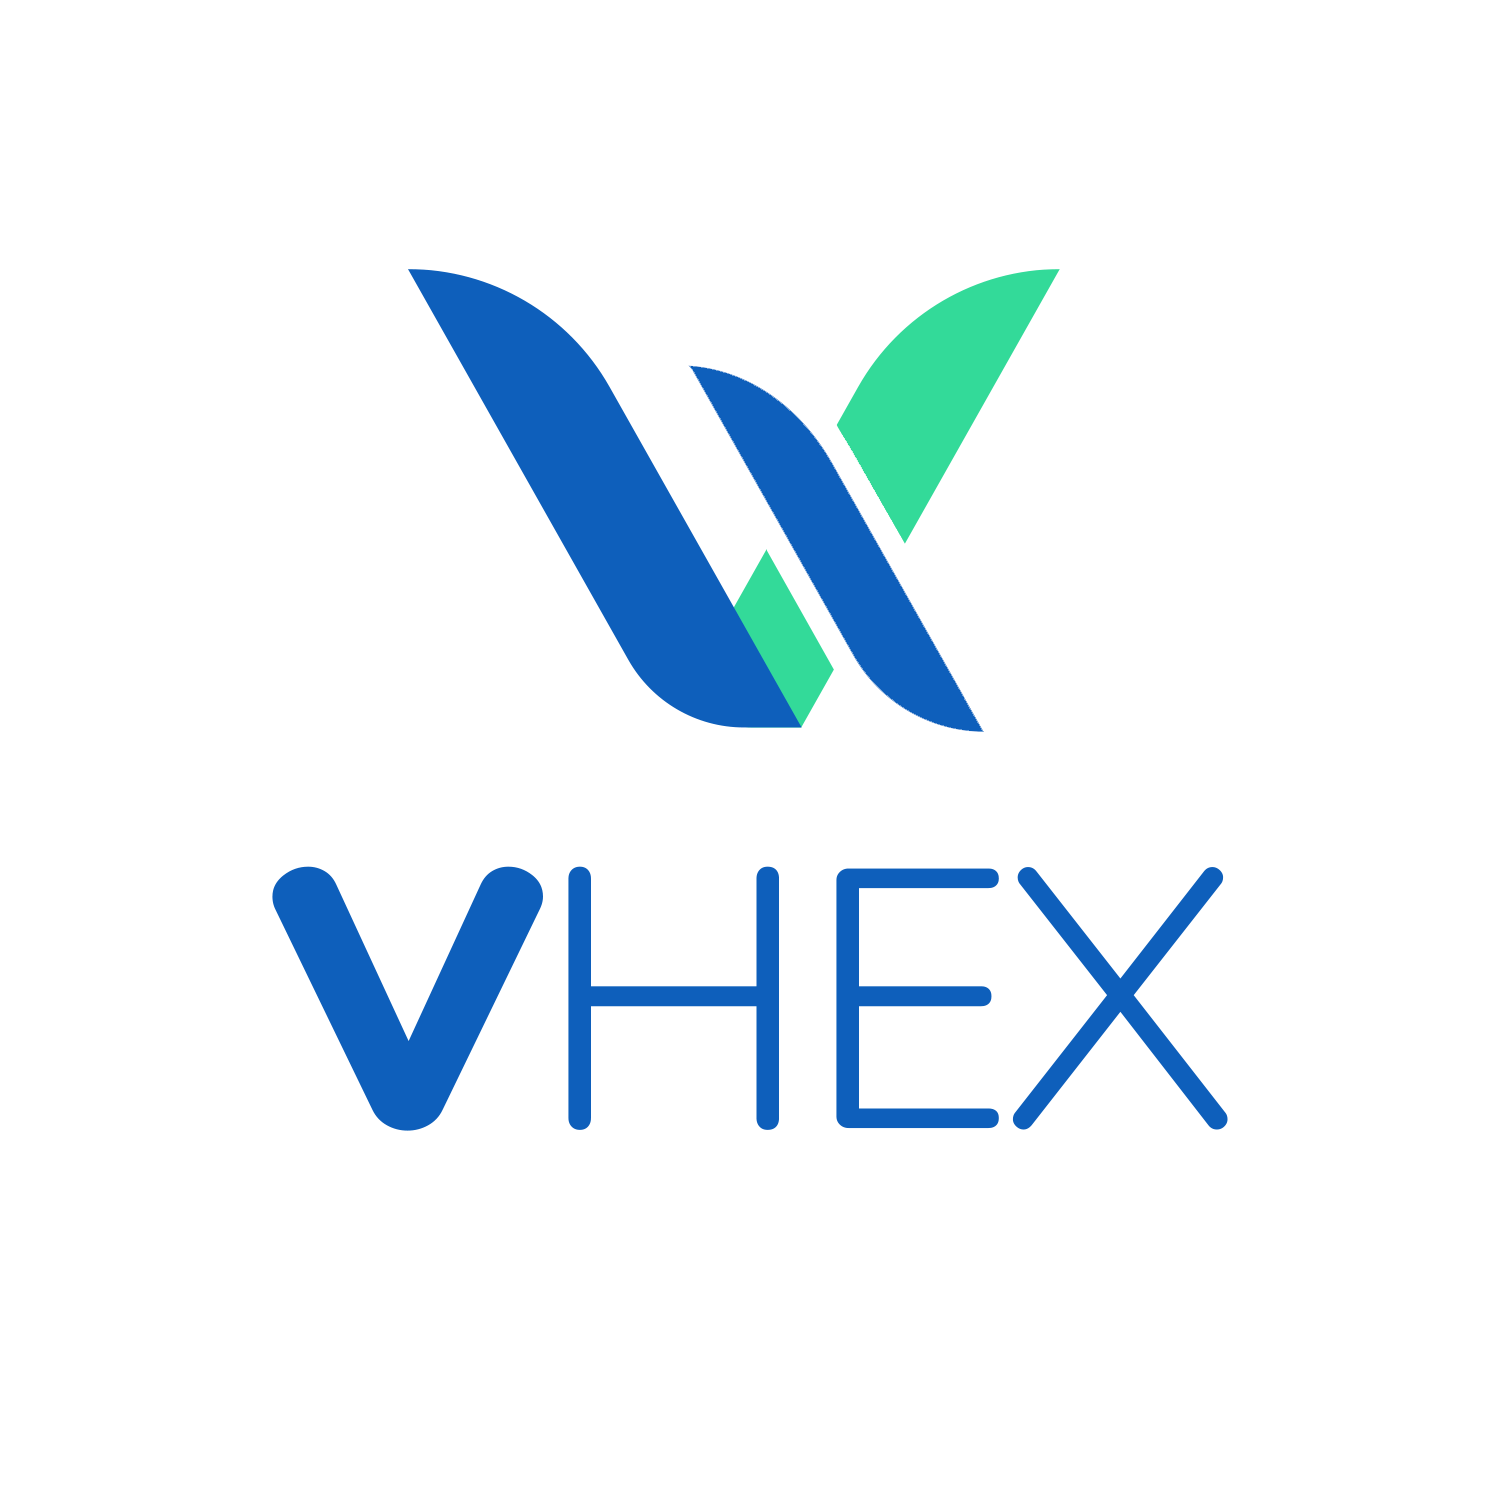 VHEX